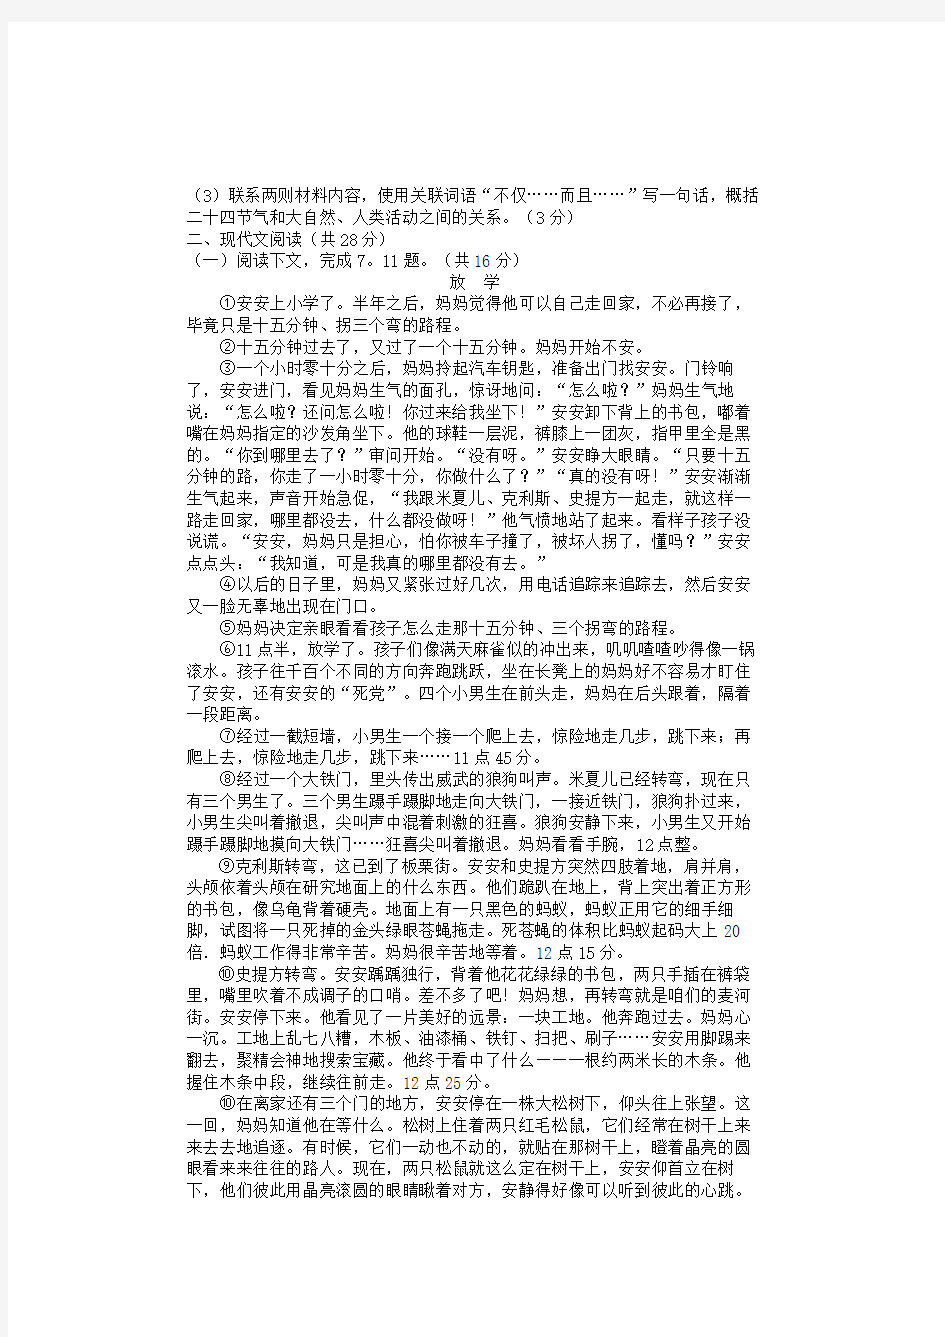 2013年河南省中考语文试题及答案